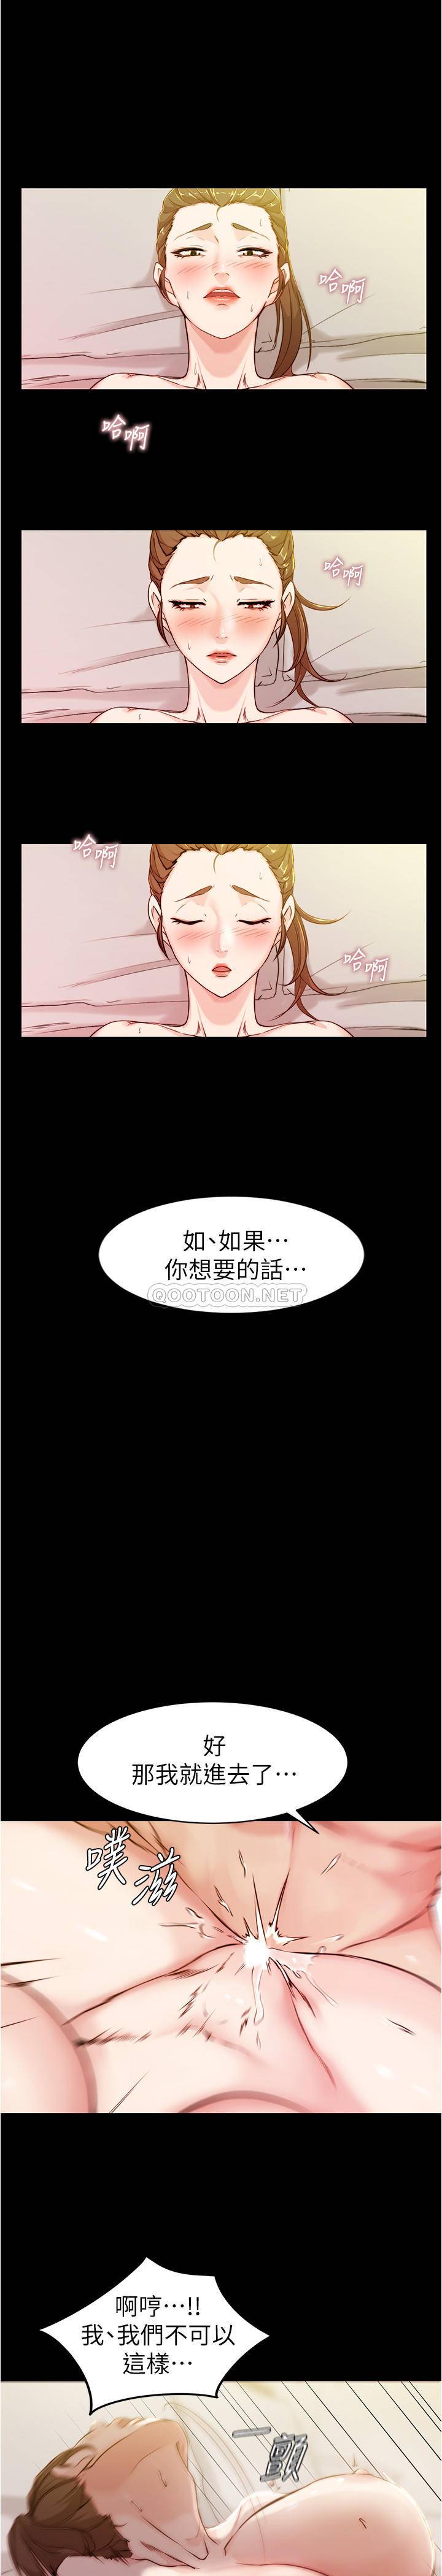 韩国污漫画 小褲褲筆記 第21话 - 汉娜肉穴的清晰触感 15